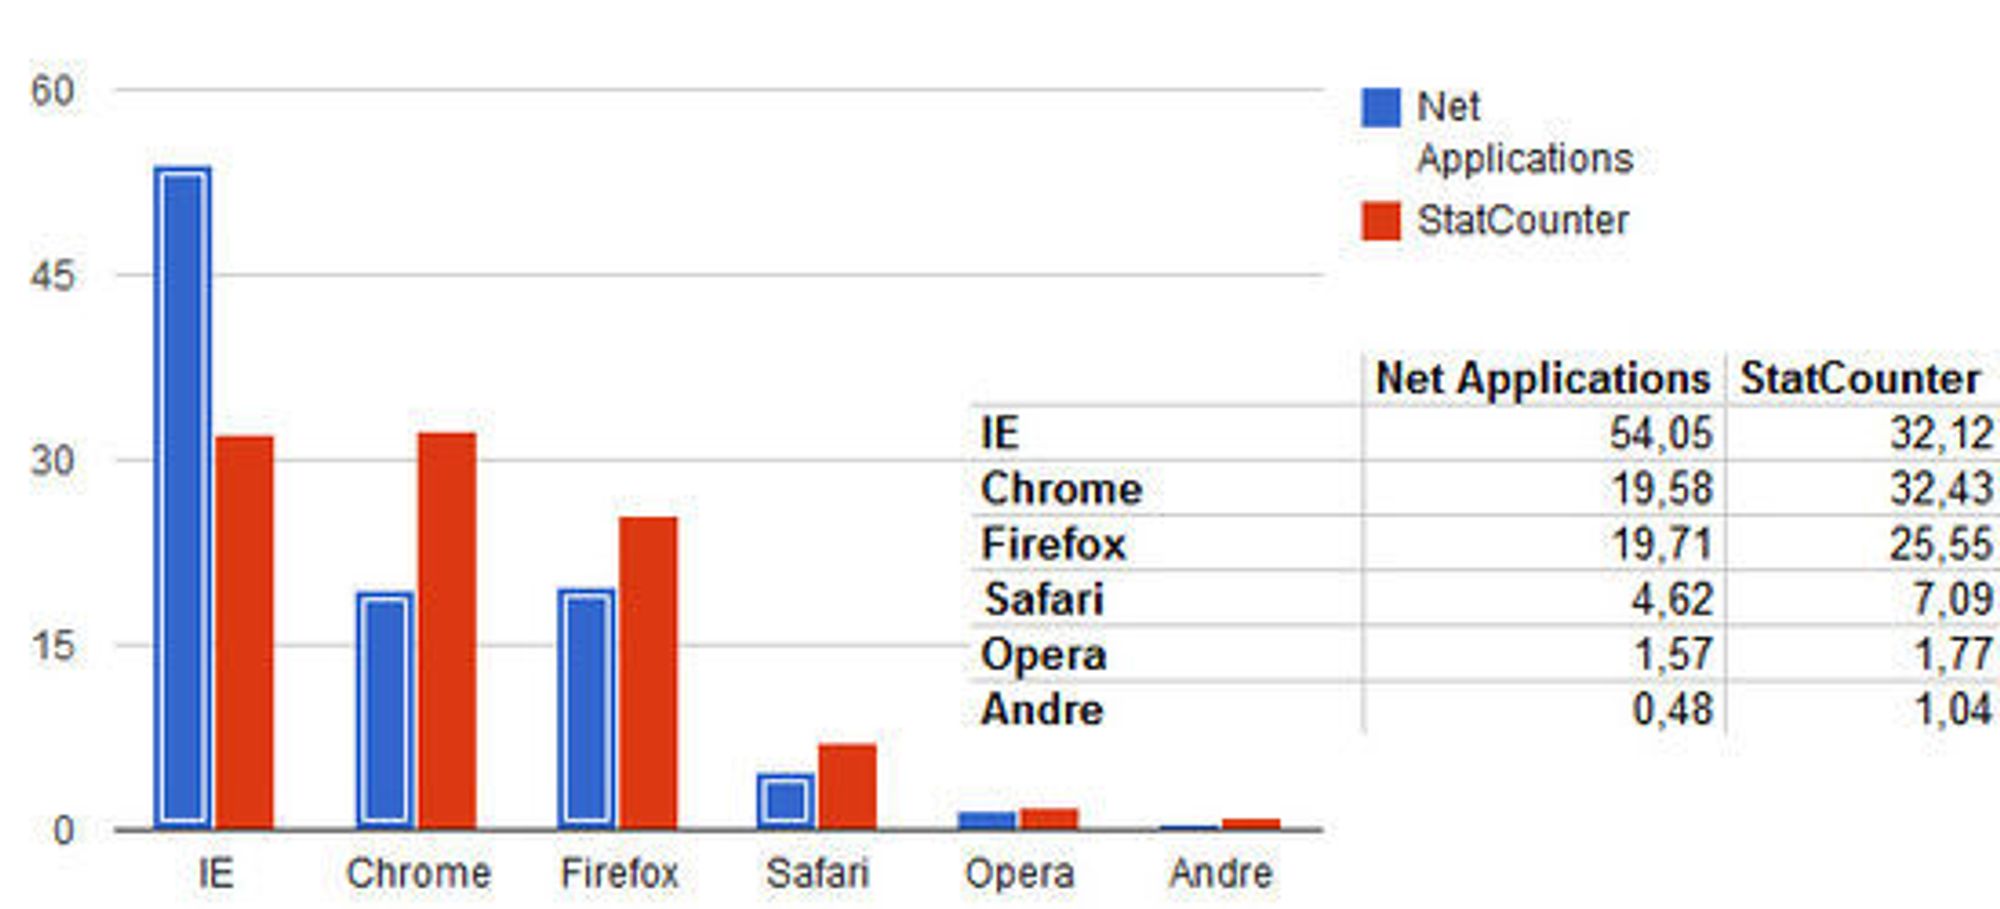 Nettleserandelene i mai 2012, ifølge henholdsvis Net Applications og StatCounter